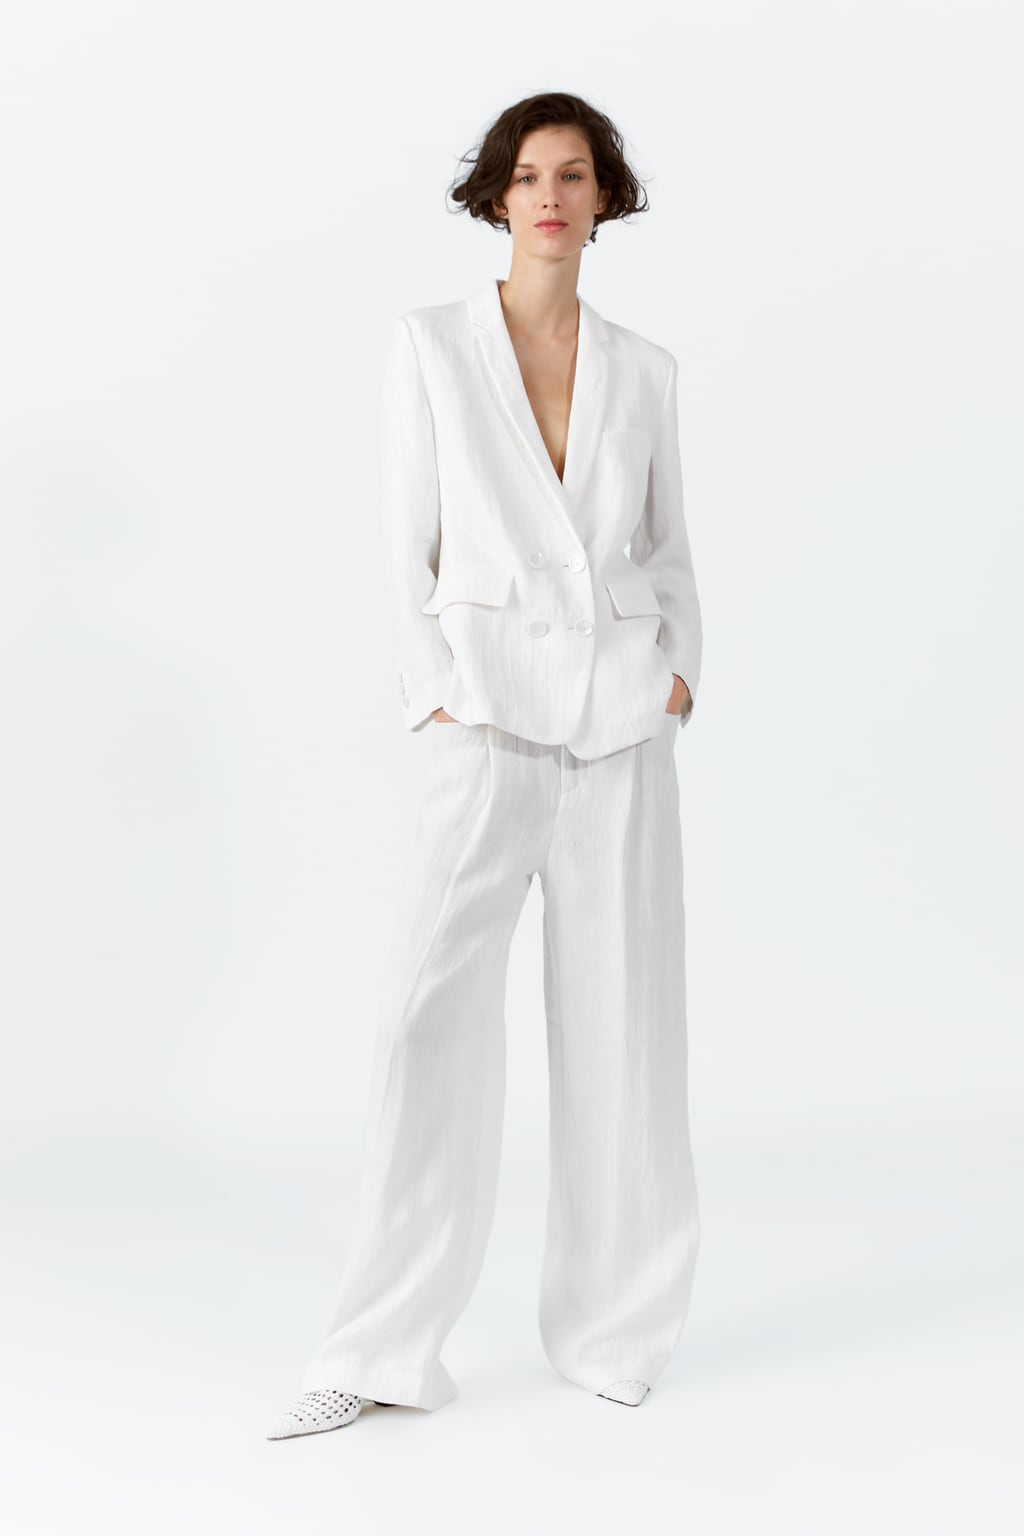 El color blanco, tendencia la colección primavera 2019 Zara - Modalia.es